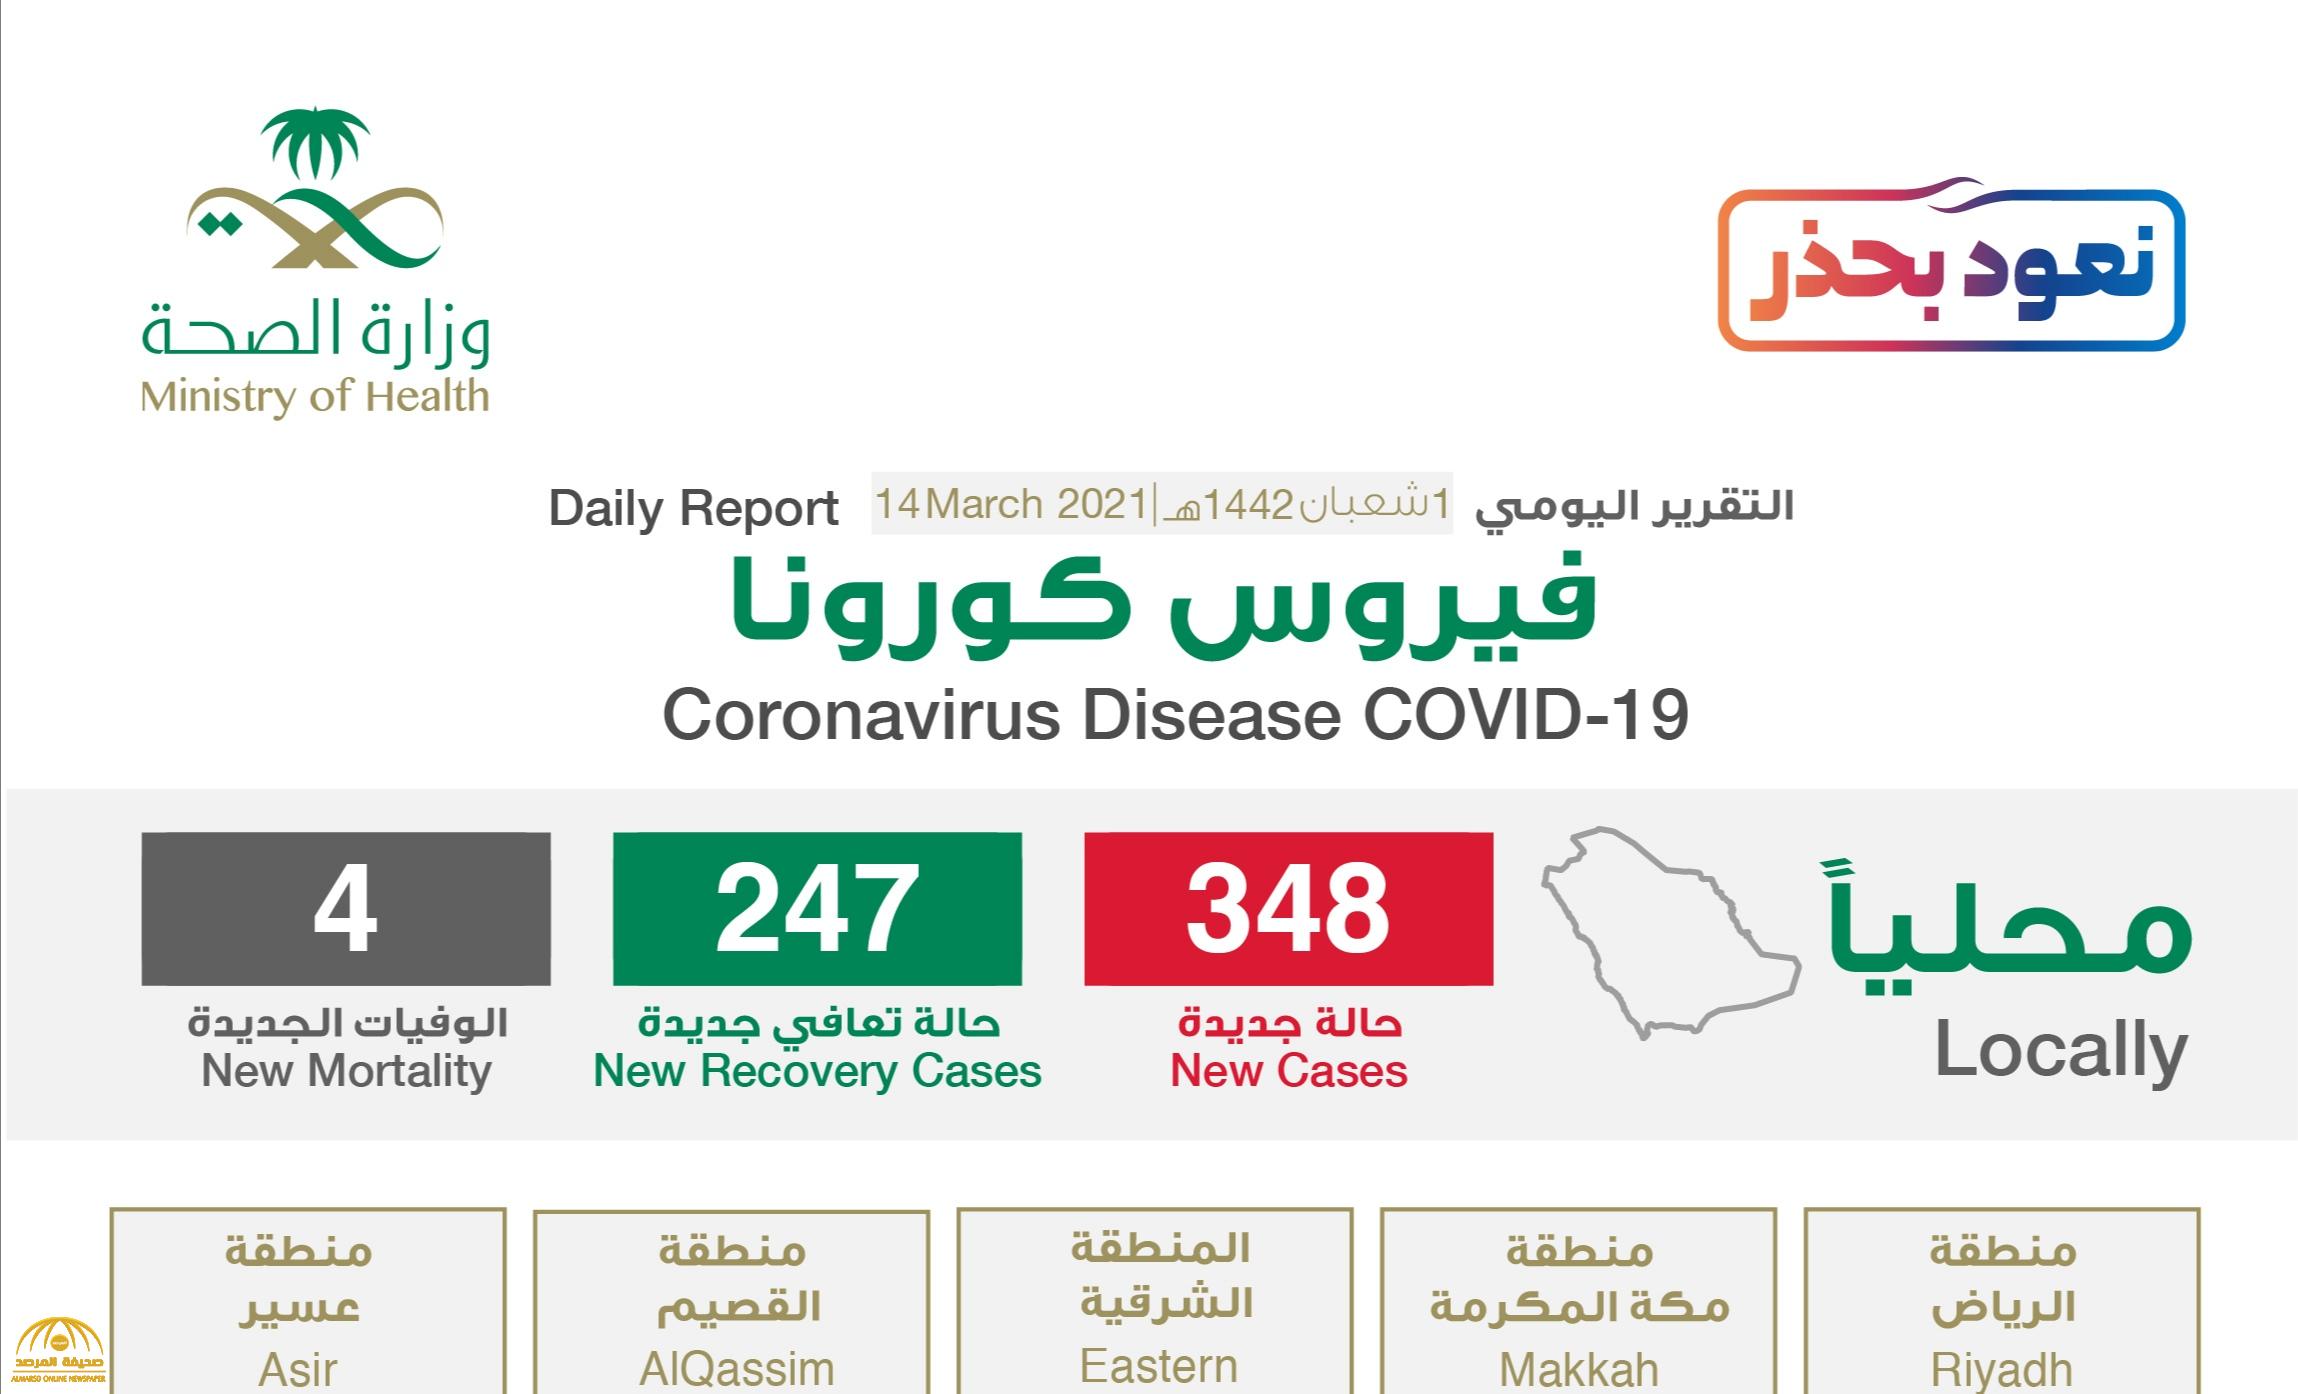 شاهد: “إنفوجرافيك” حول توزيع حالات الإصابة الجديدة بكورونا بحسب المناطق اليوم الأحد